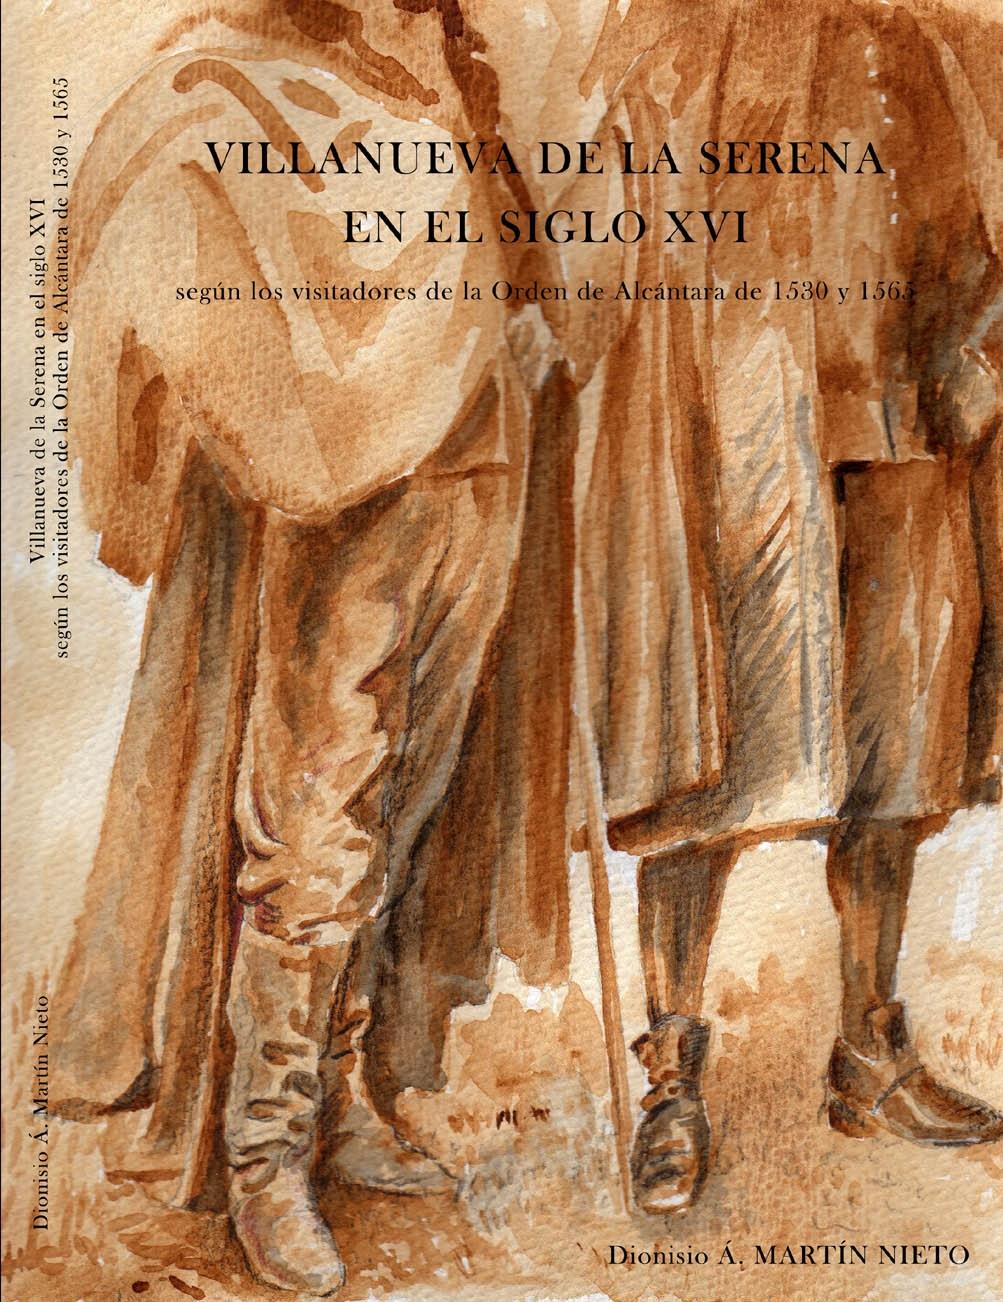 Villanueva de la Serena en el siglo XVI "Según los visitadores de la Orden de Alcántara de 1530 y 1565". 